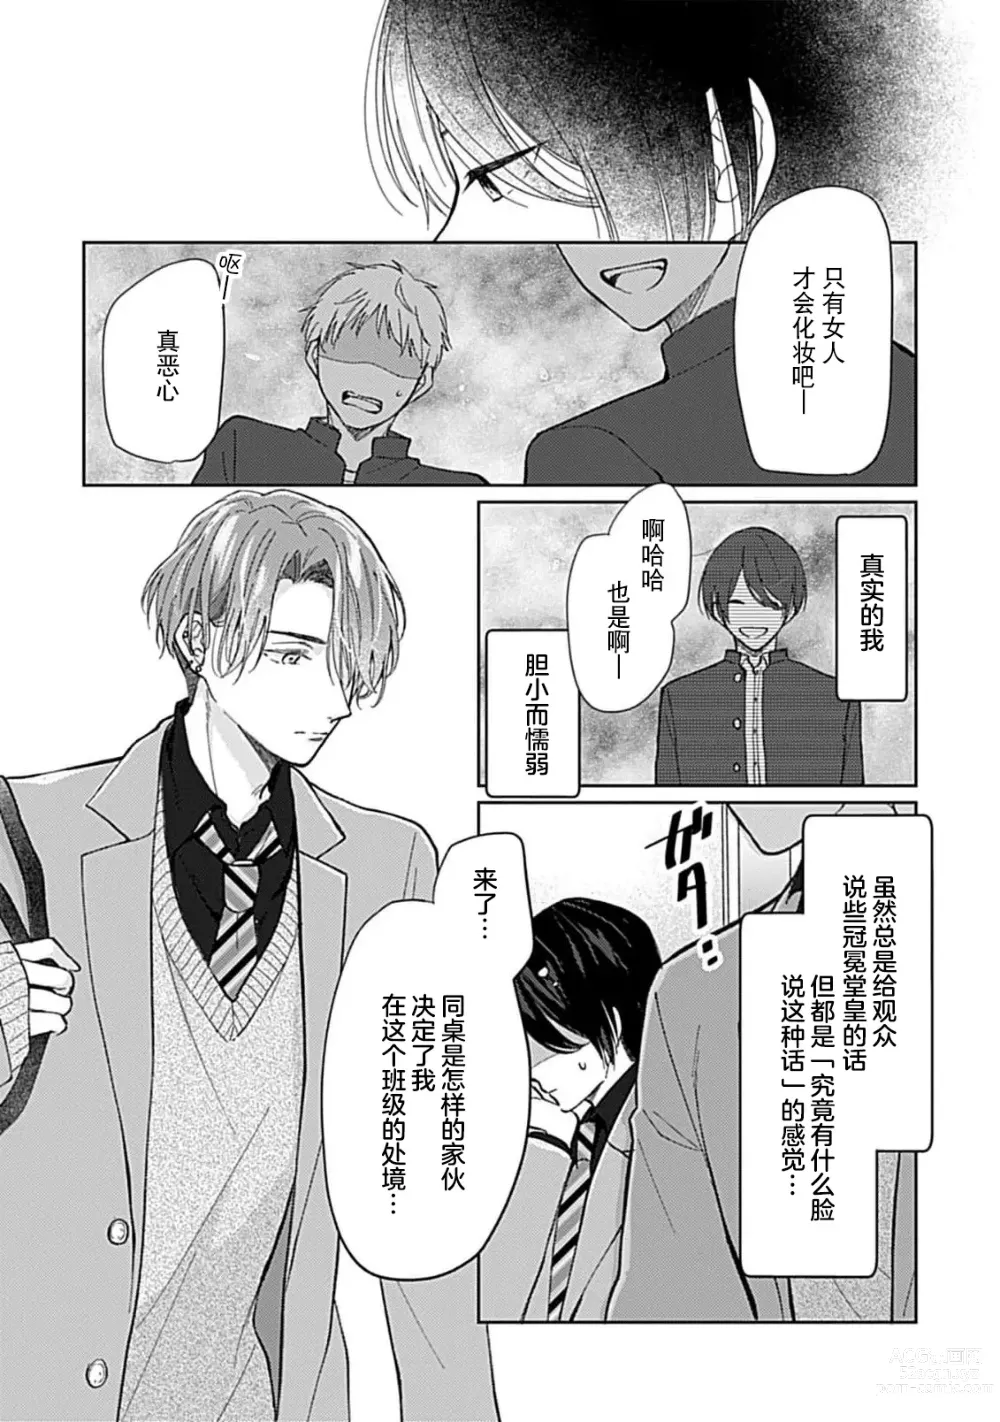 Page 14 of manga 恋情与秘密难以映照 1